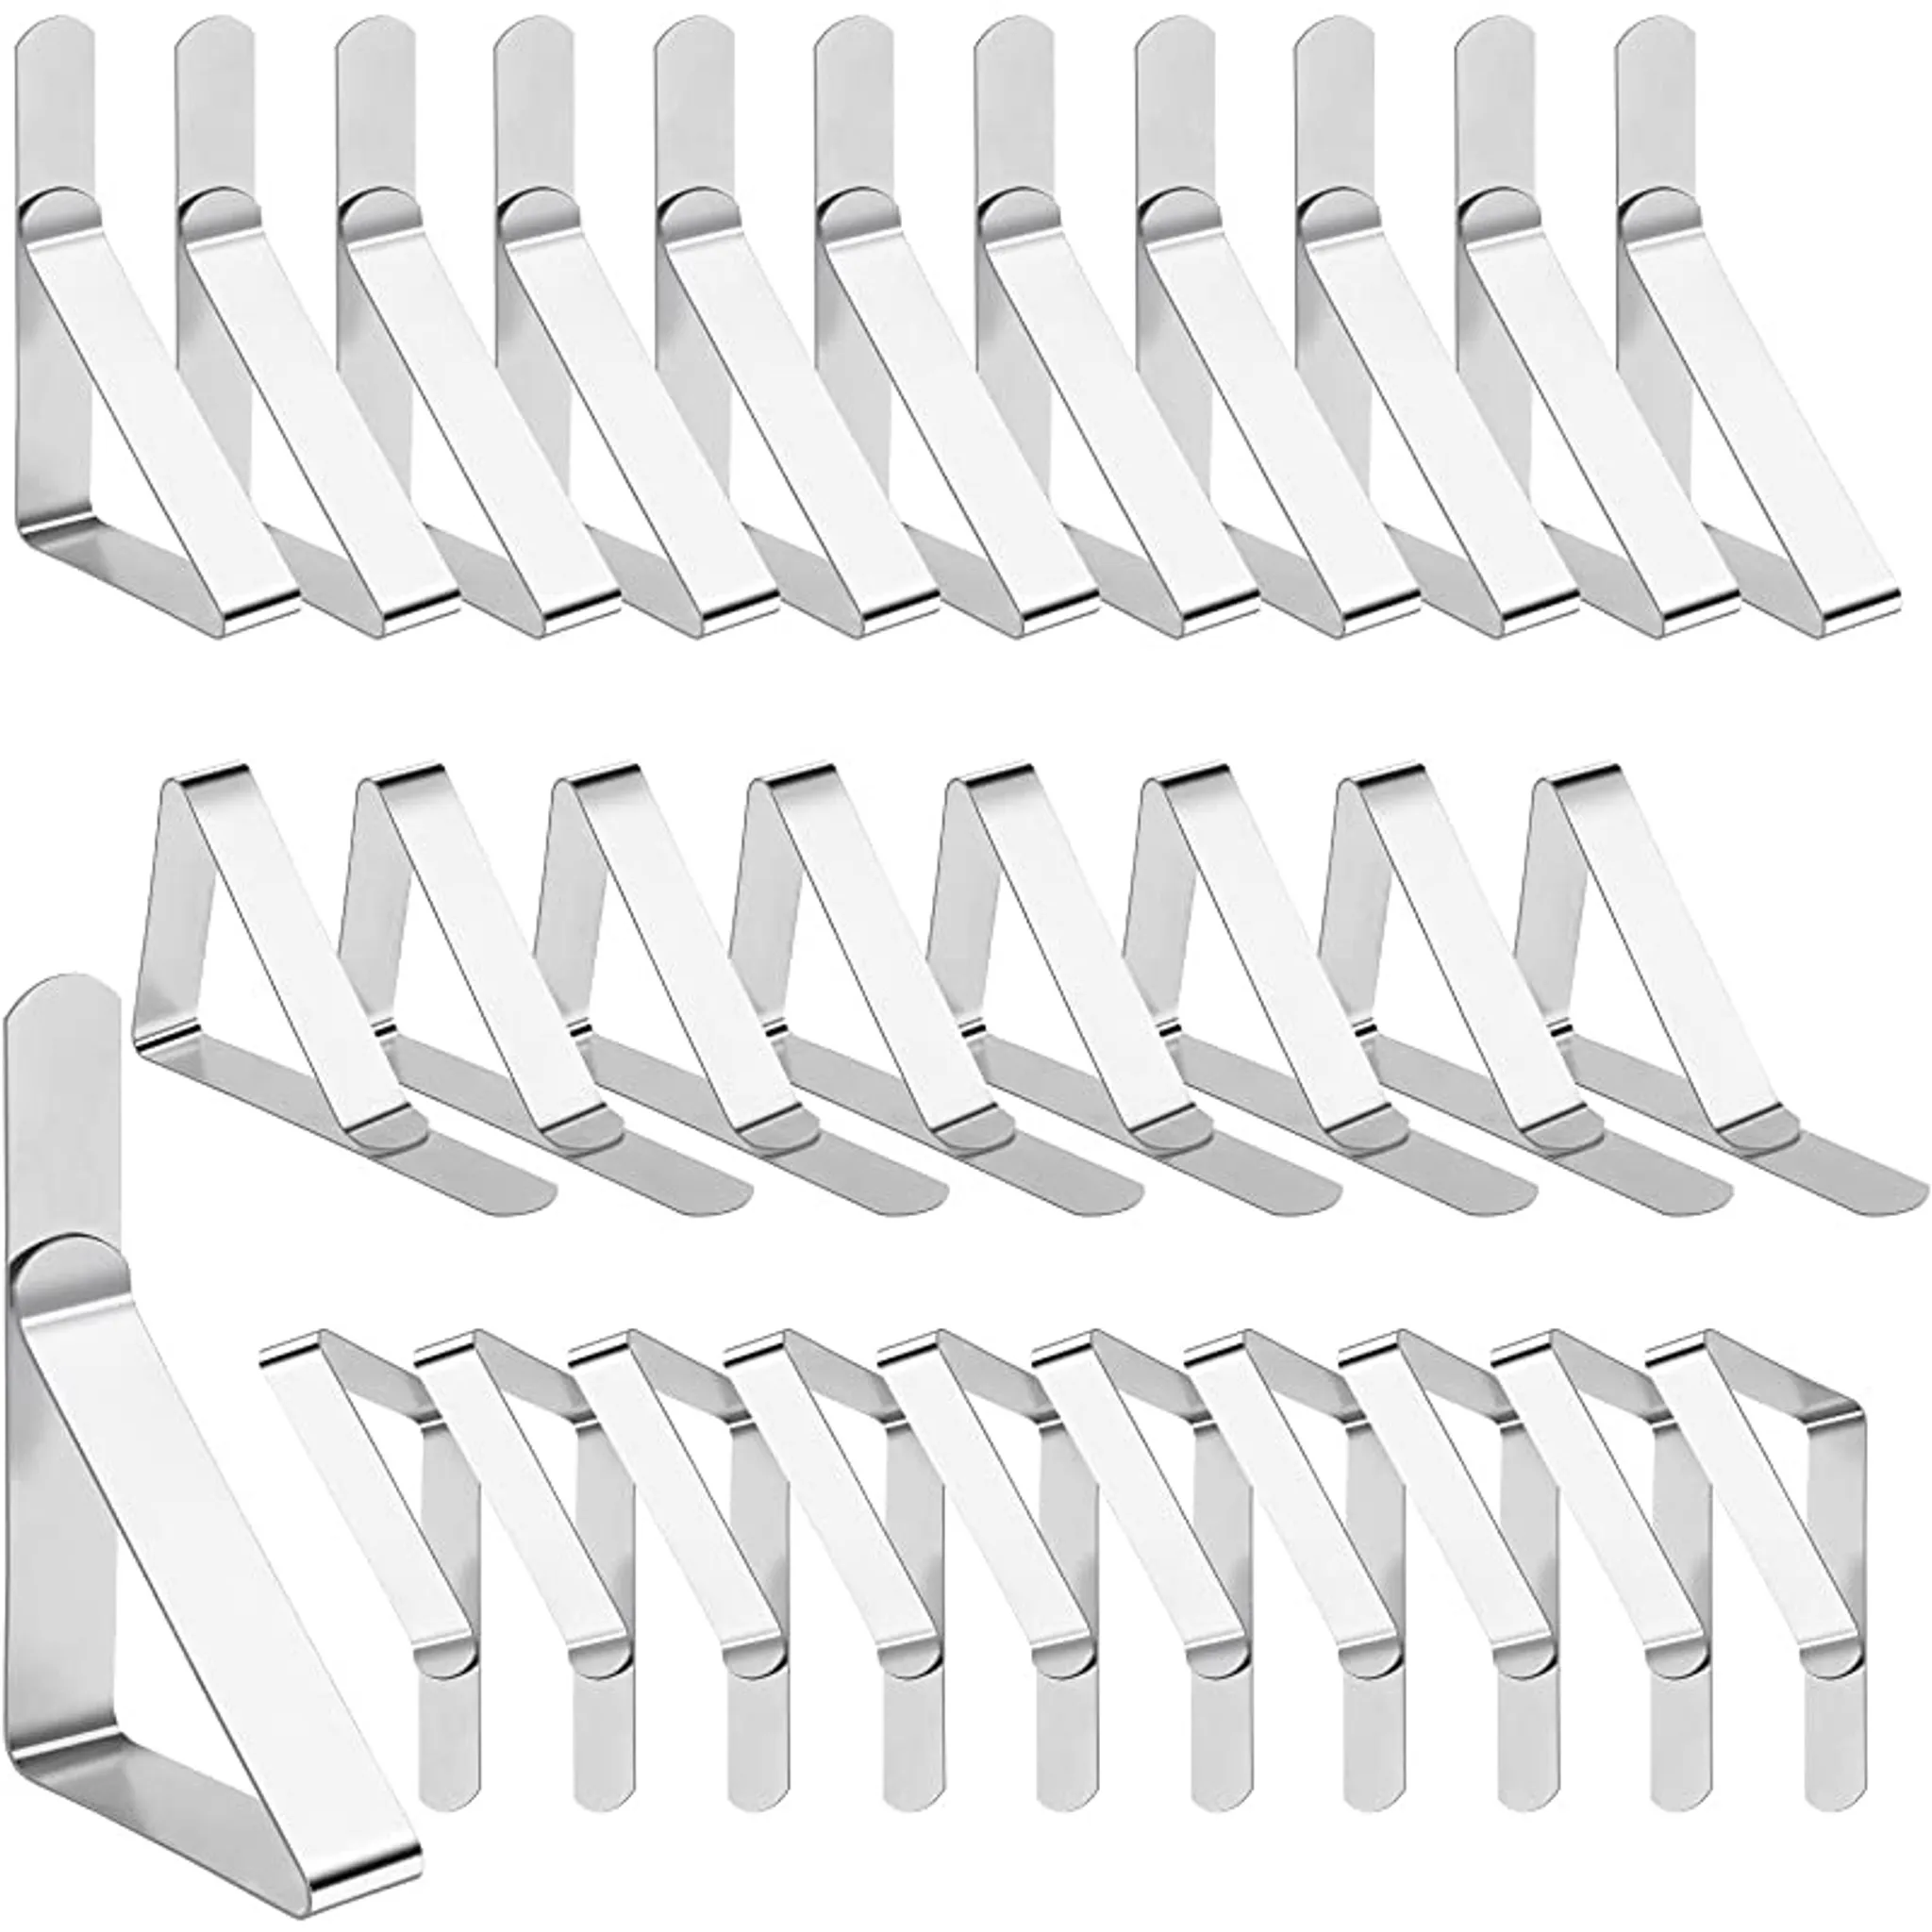 Tischdeckenklammer, Tischdeckenklammern-Set mit 24 Stück